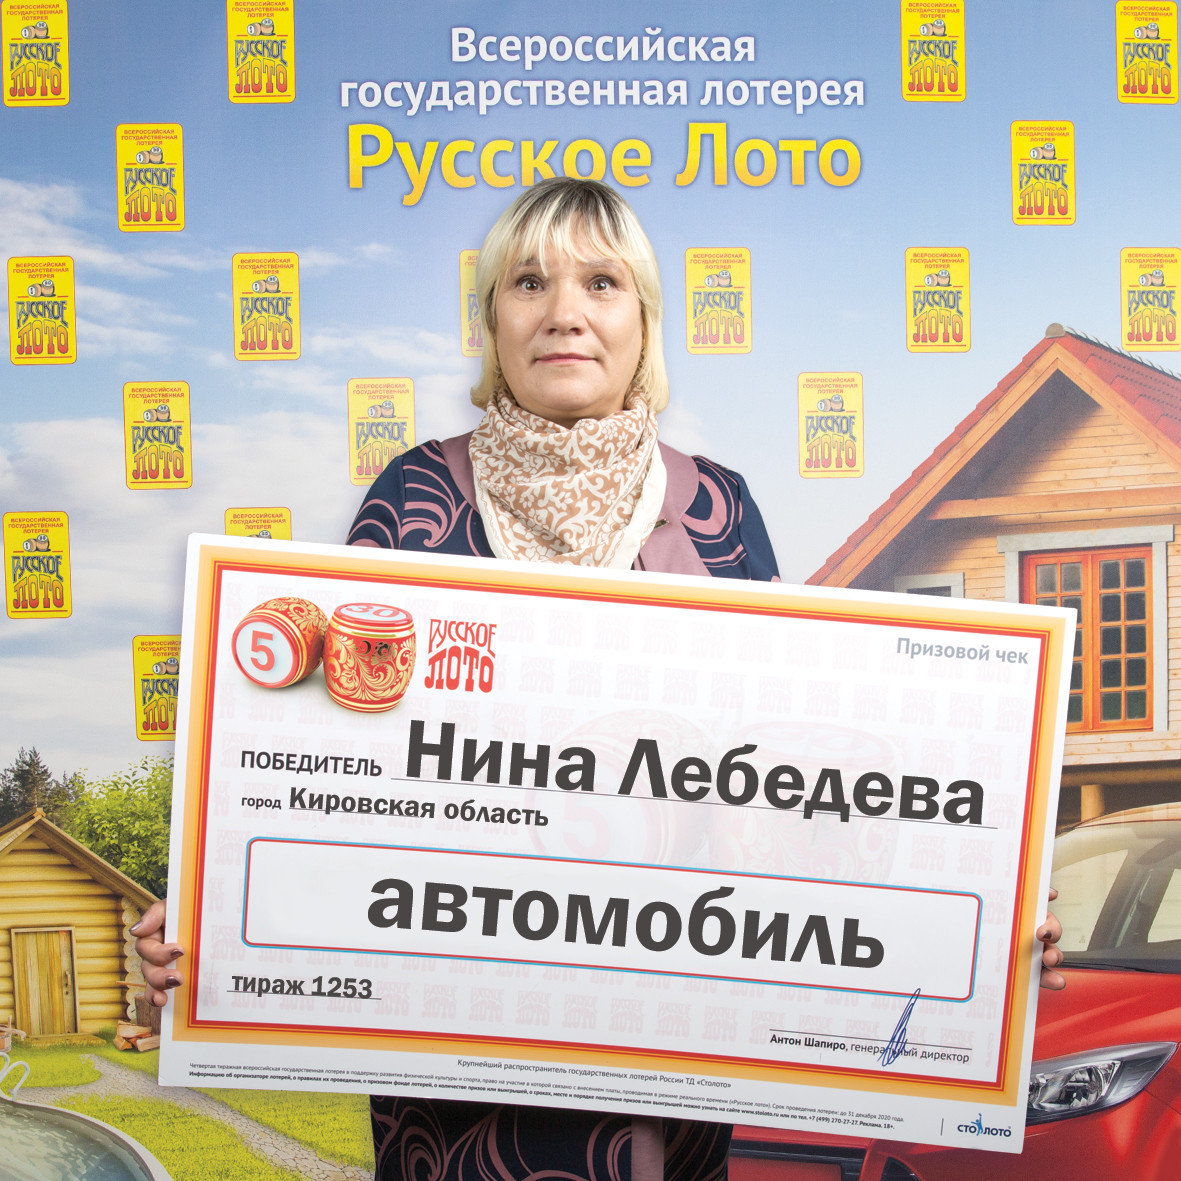 Жительница Кировской области выиграла в лотерею машину стоимостью 700 тысяч